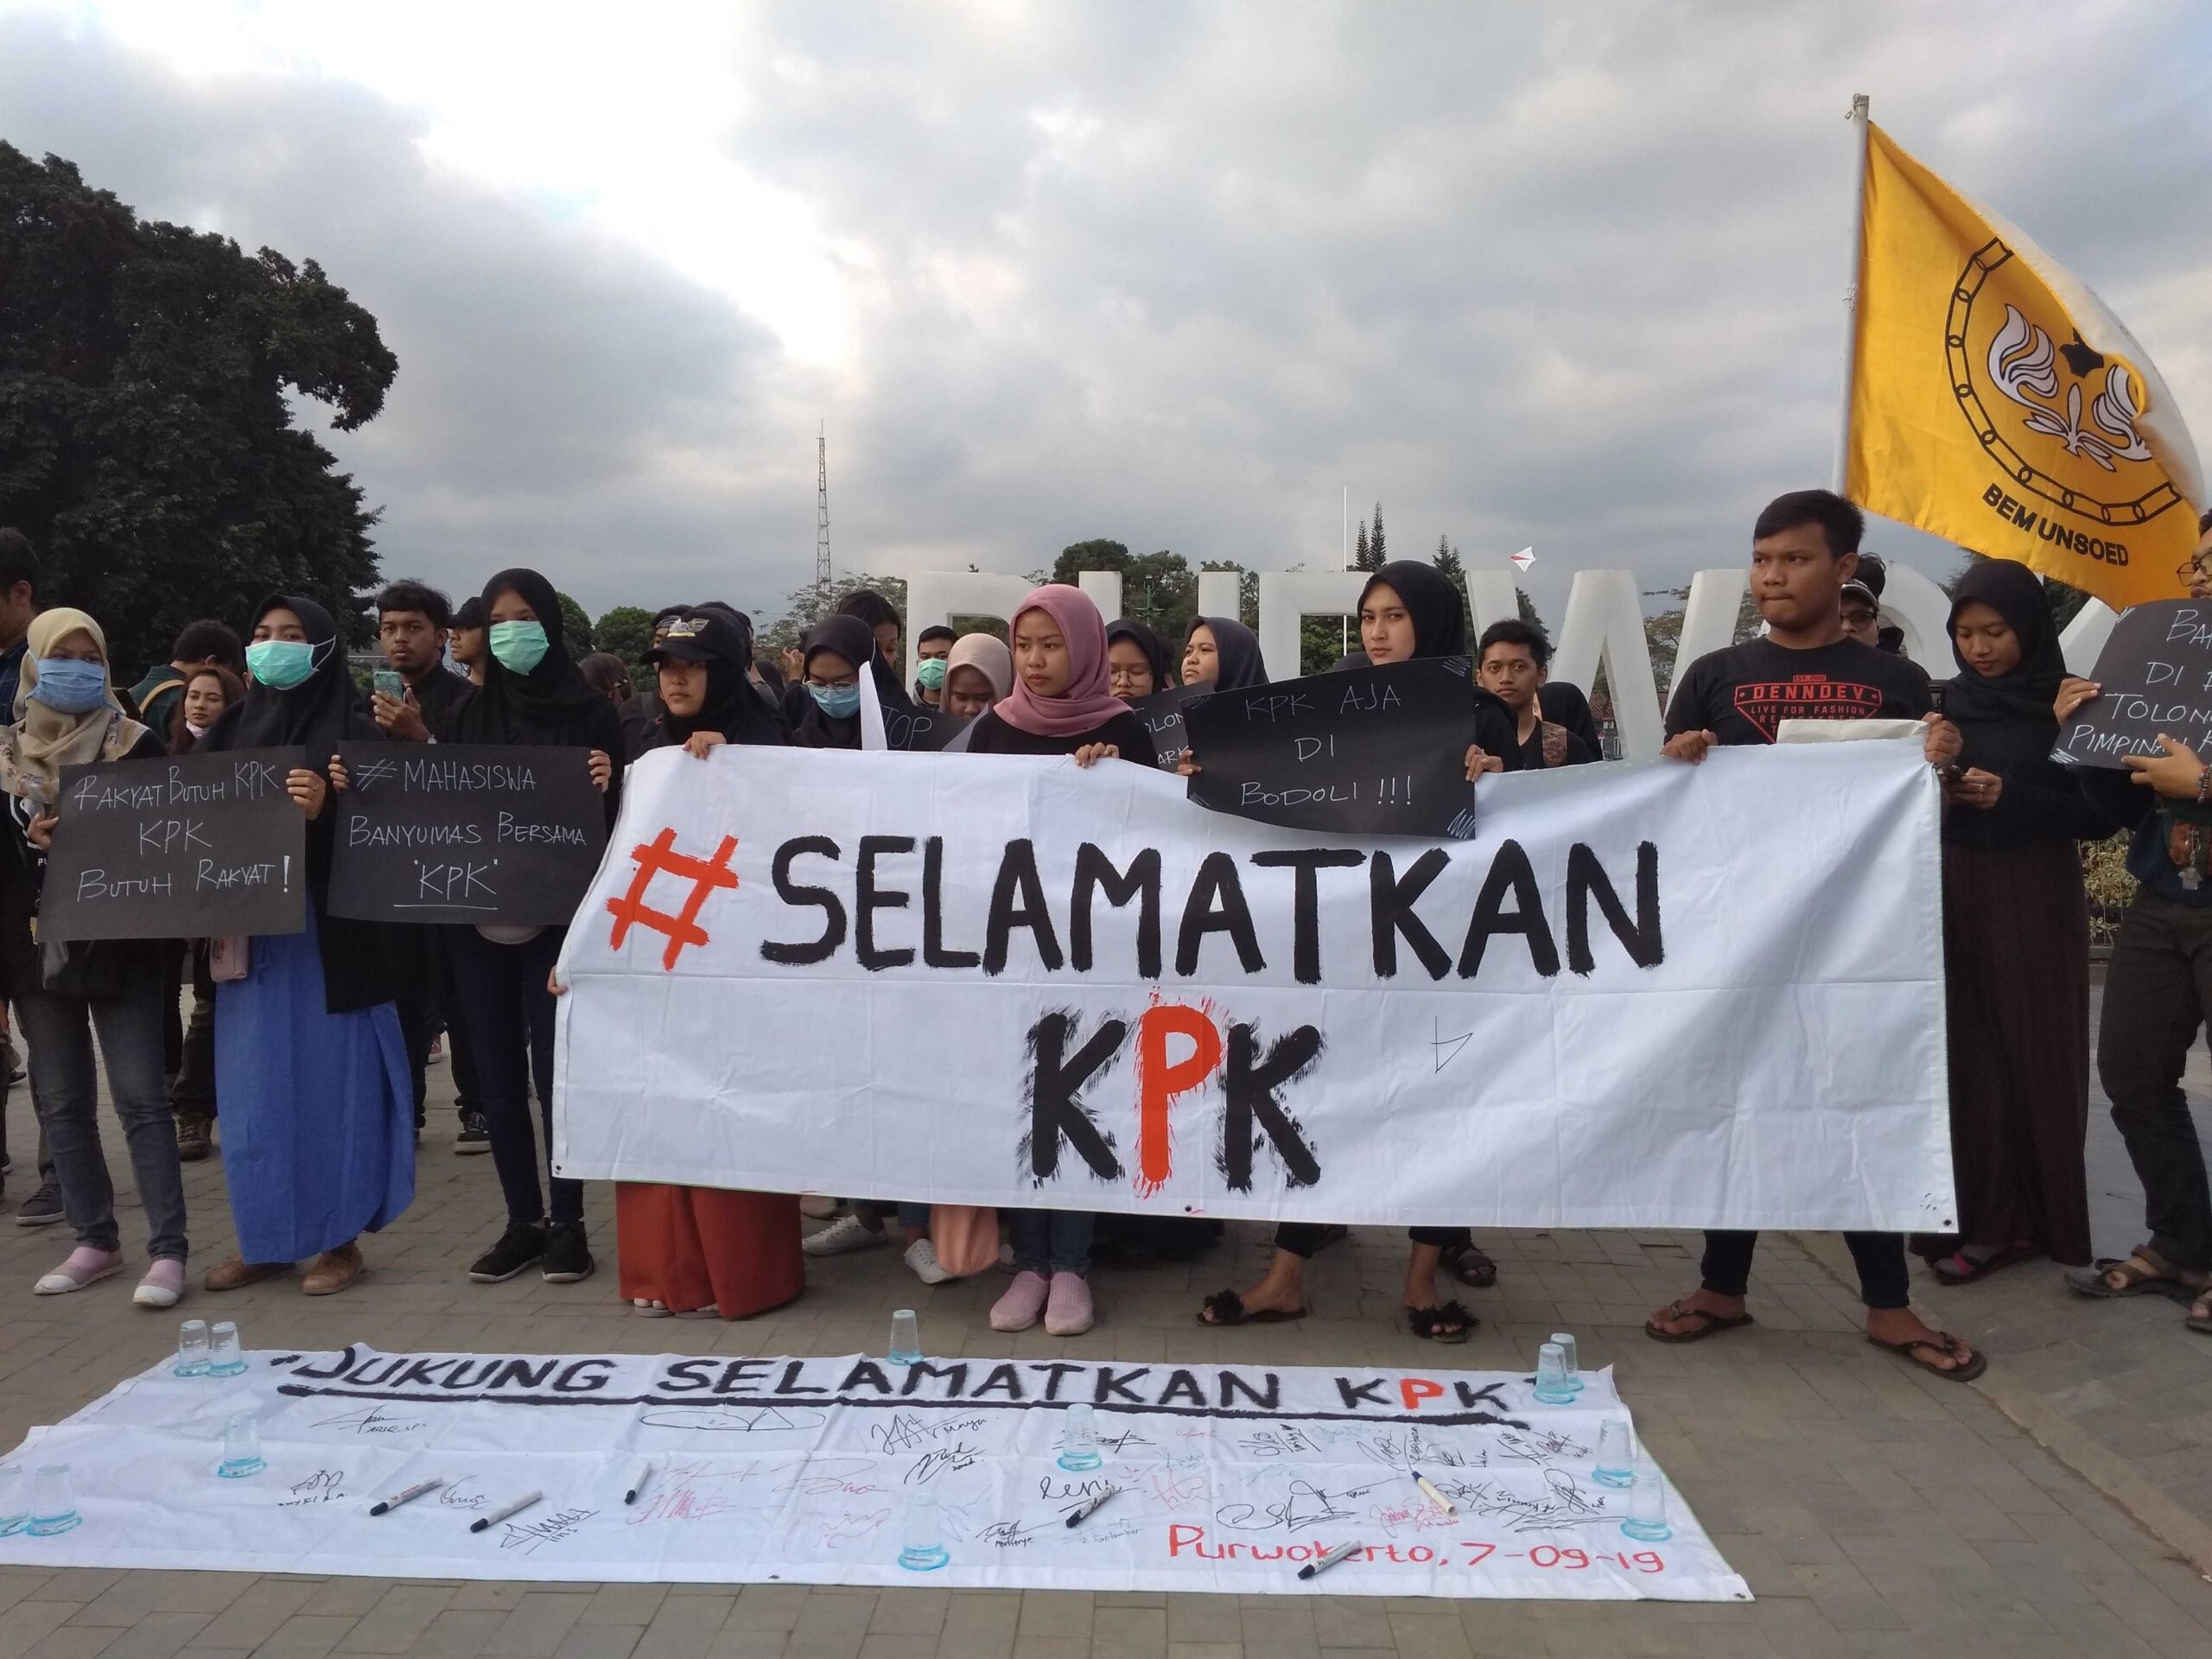 SELAMATKAN KPK: Massa dari Aliansi Mahasiswa Banyumas membentangkan spanduk bertuliskan tagar Selamatkan KPK, saat menggelar aksi di Kompleks Alun-Alun Purwokerto, Sabtu (7/9). (20) (SB/Dhika Wicaksana)